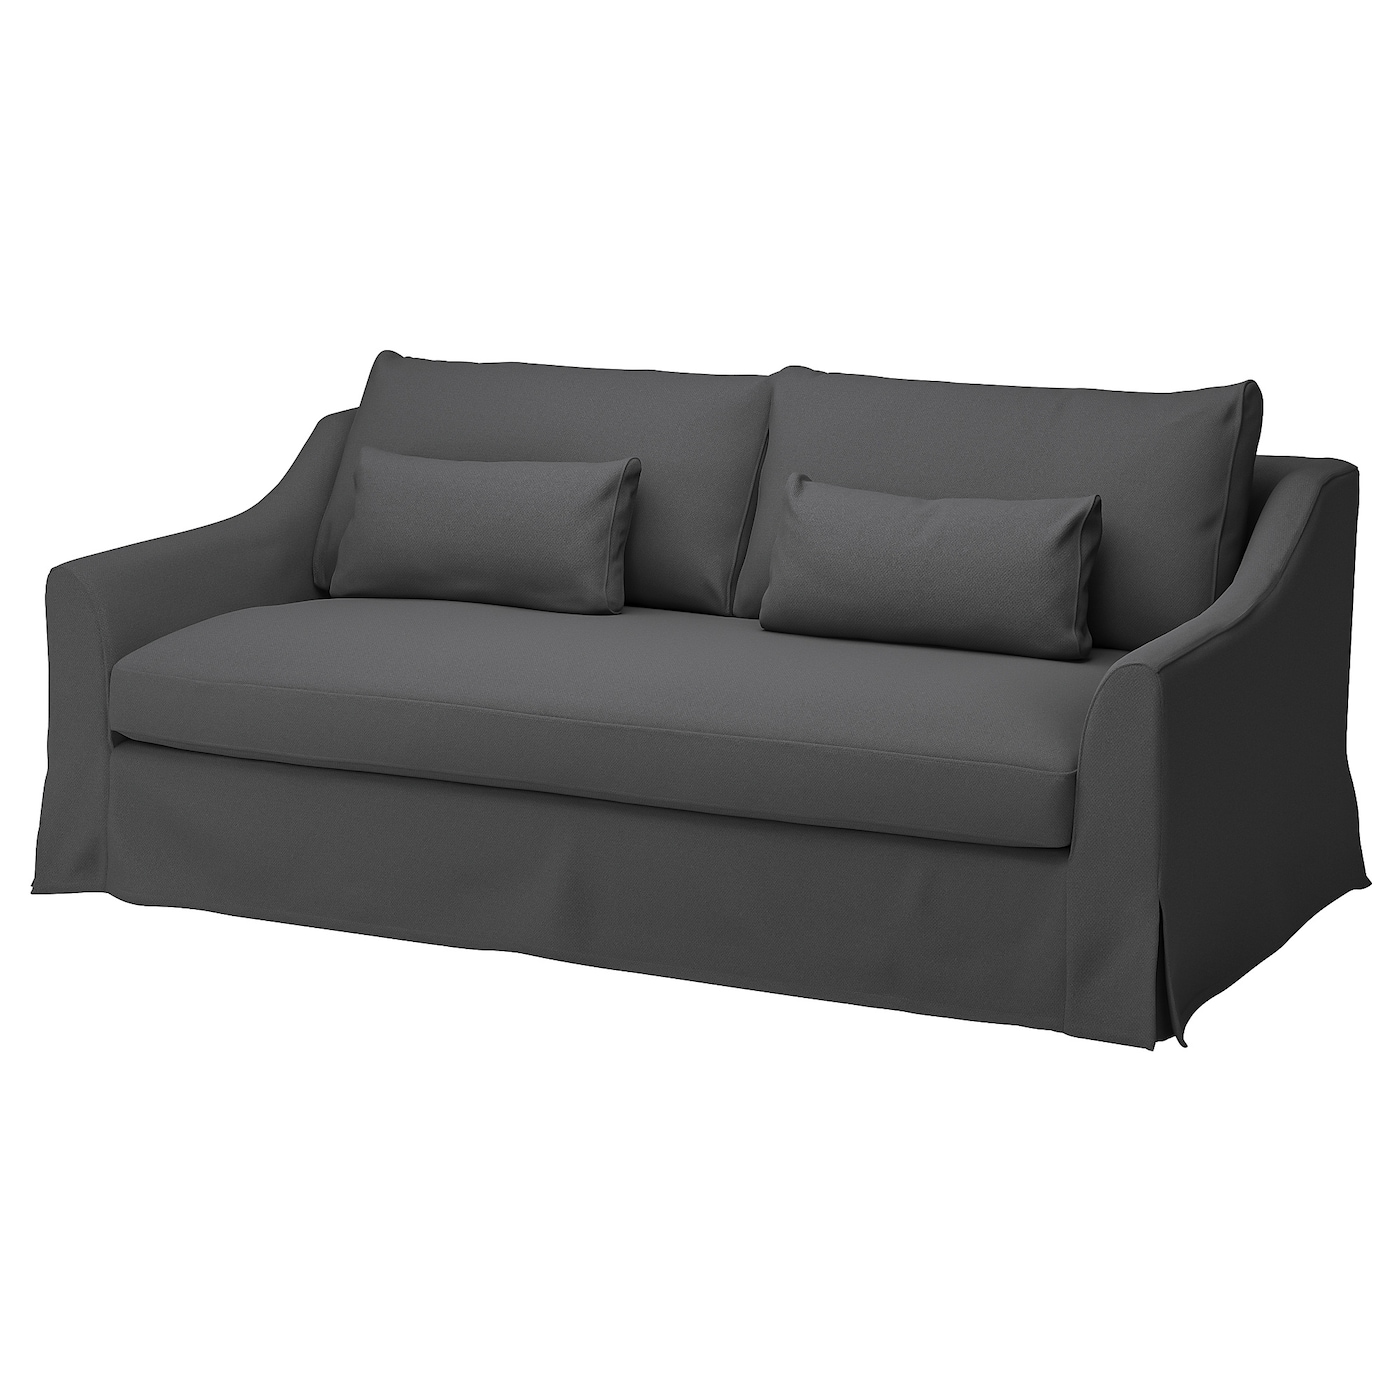 FÄRLÖV 3er-Sofa  -  - Möbel Ideen für dein Zuhause von Home Trends. Möbel Trends von Social Media Influencer für dein Skandi Zuhause.